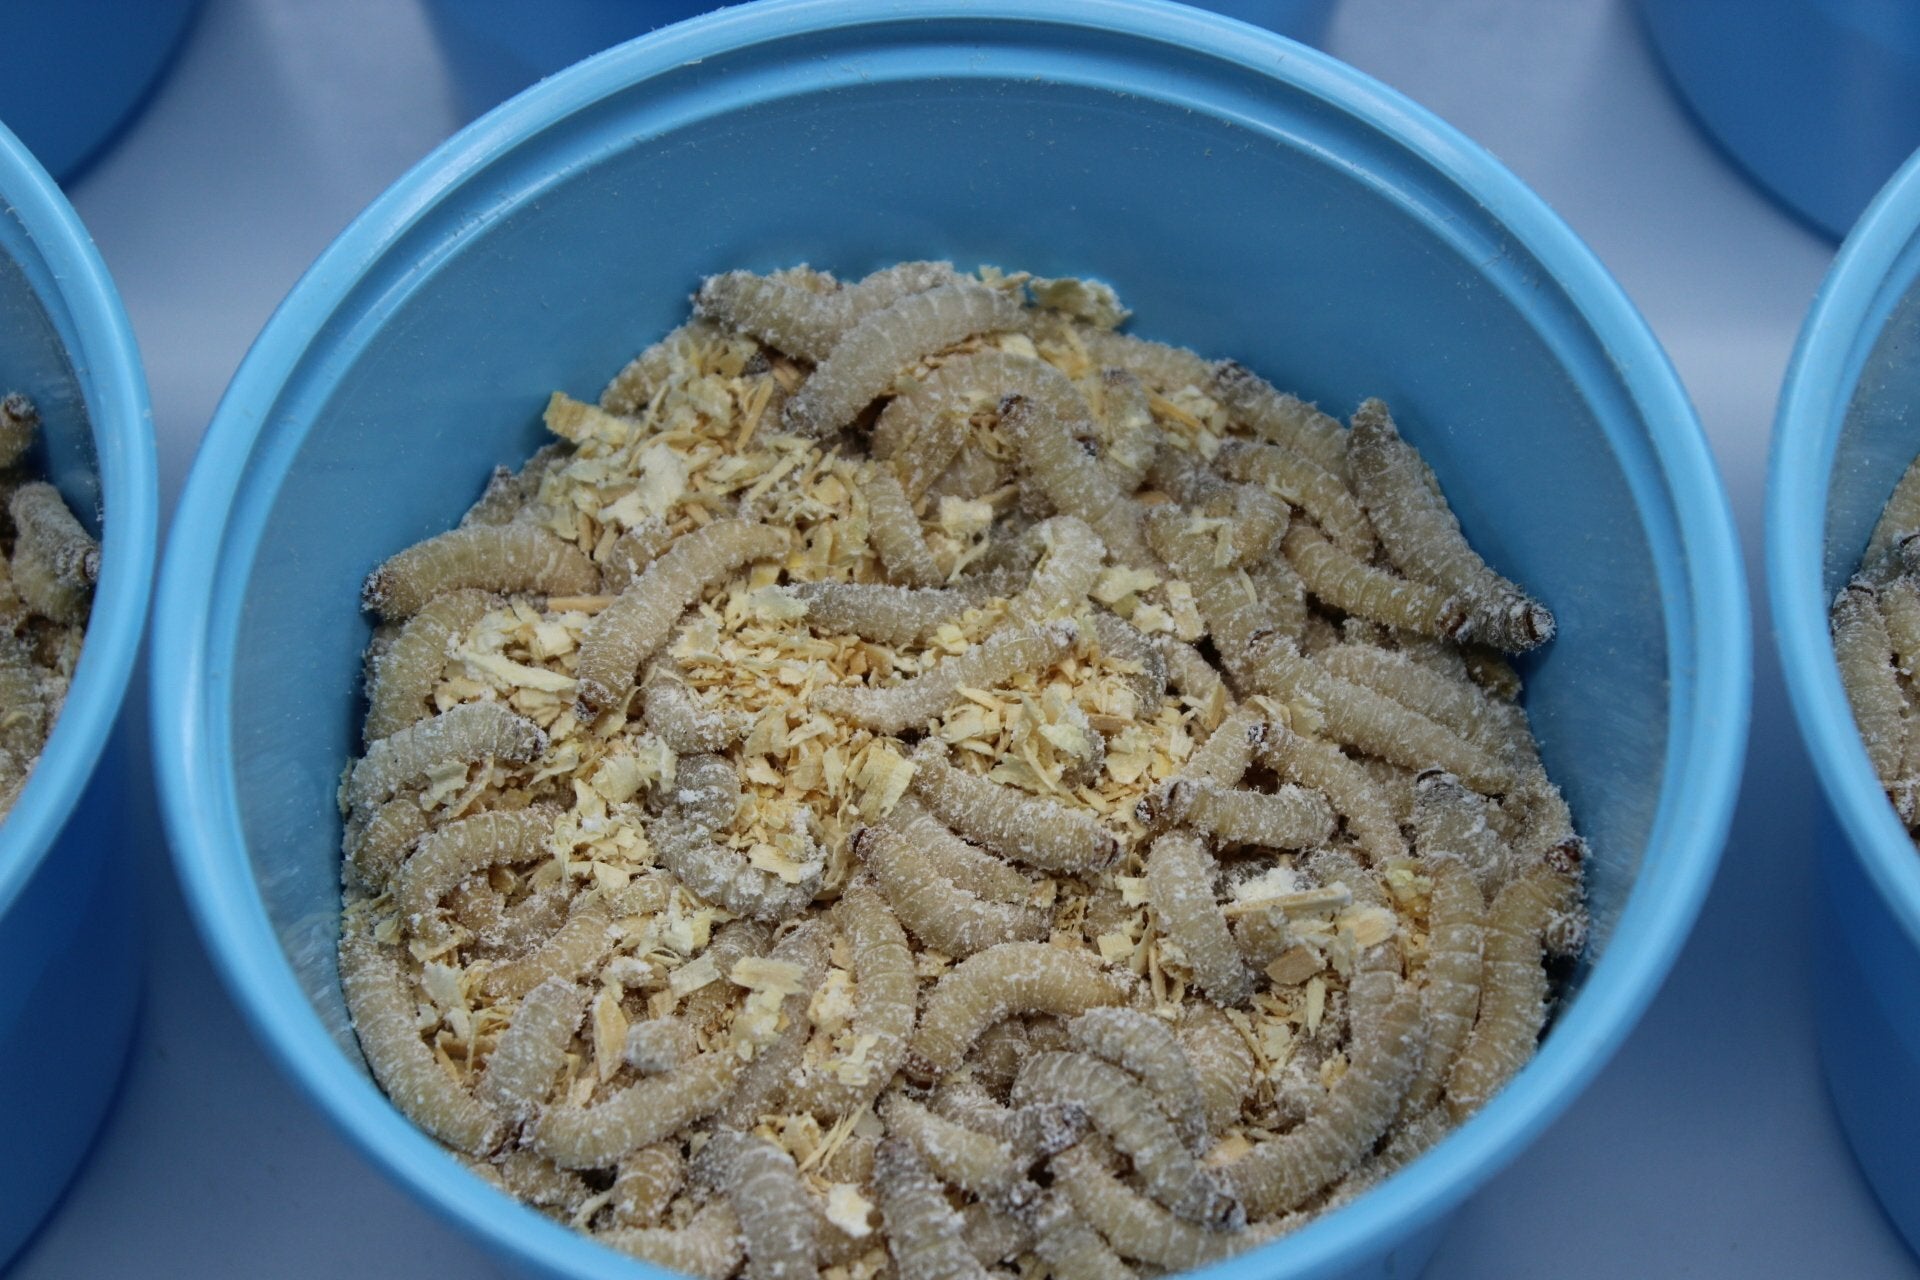 Wax Worms (Galleria mellonella family)